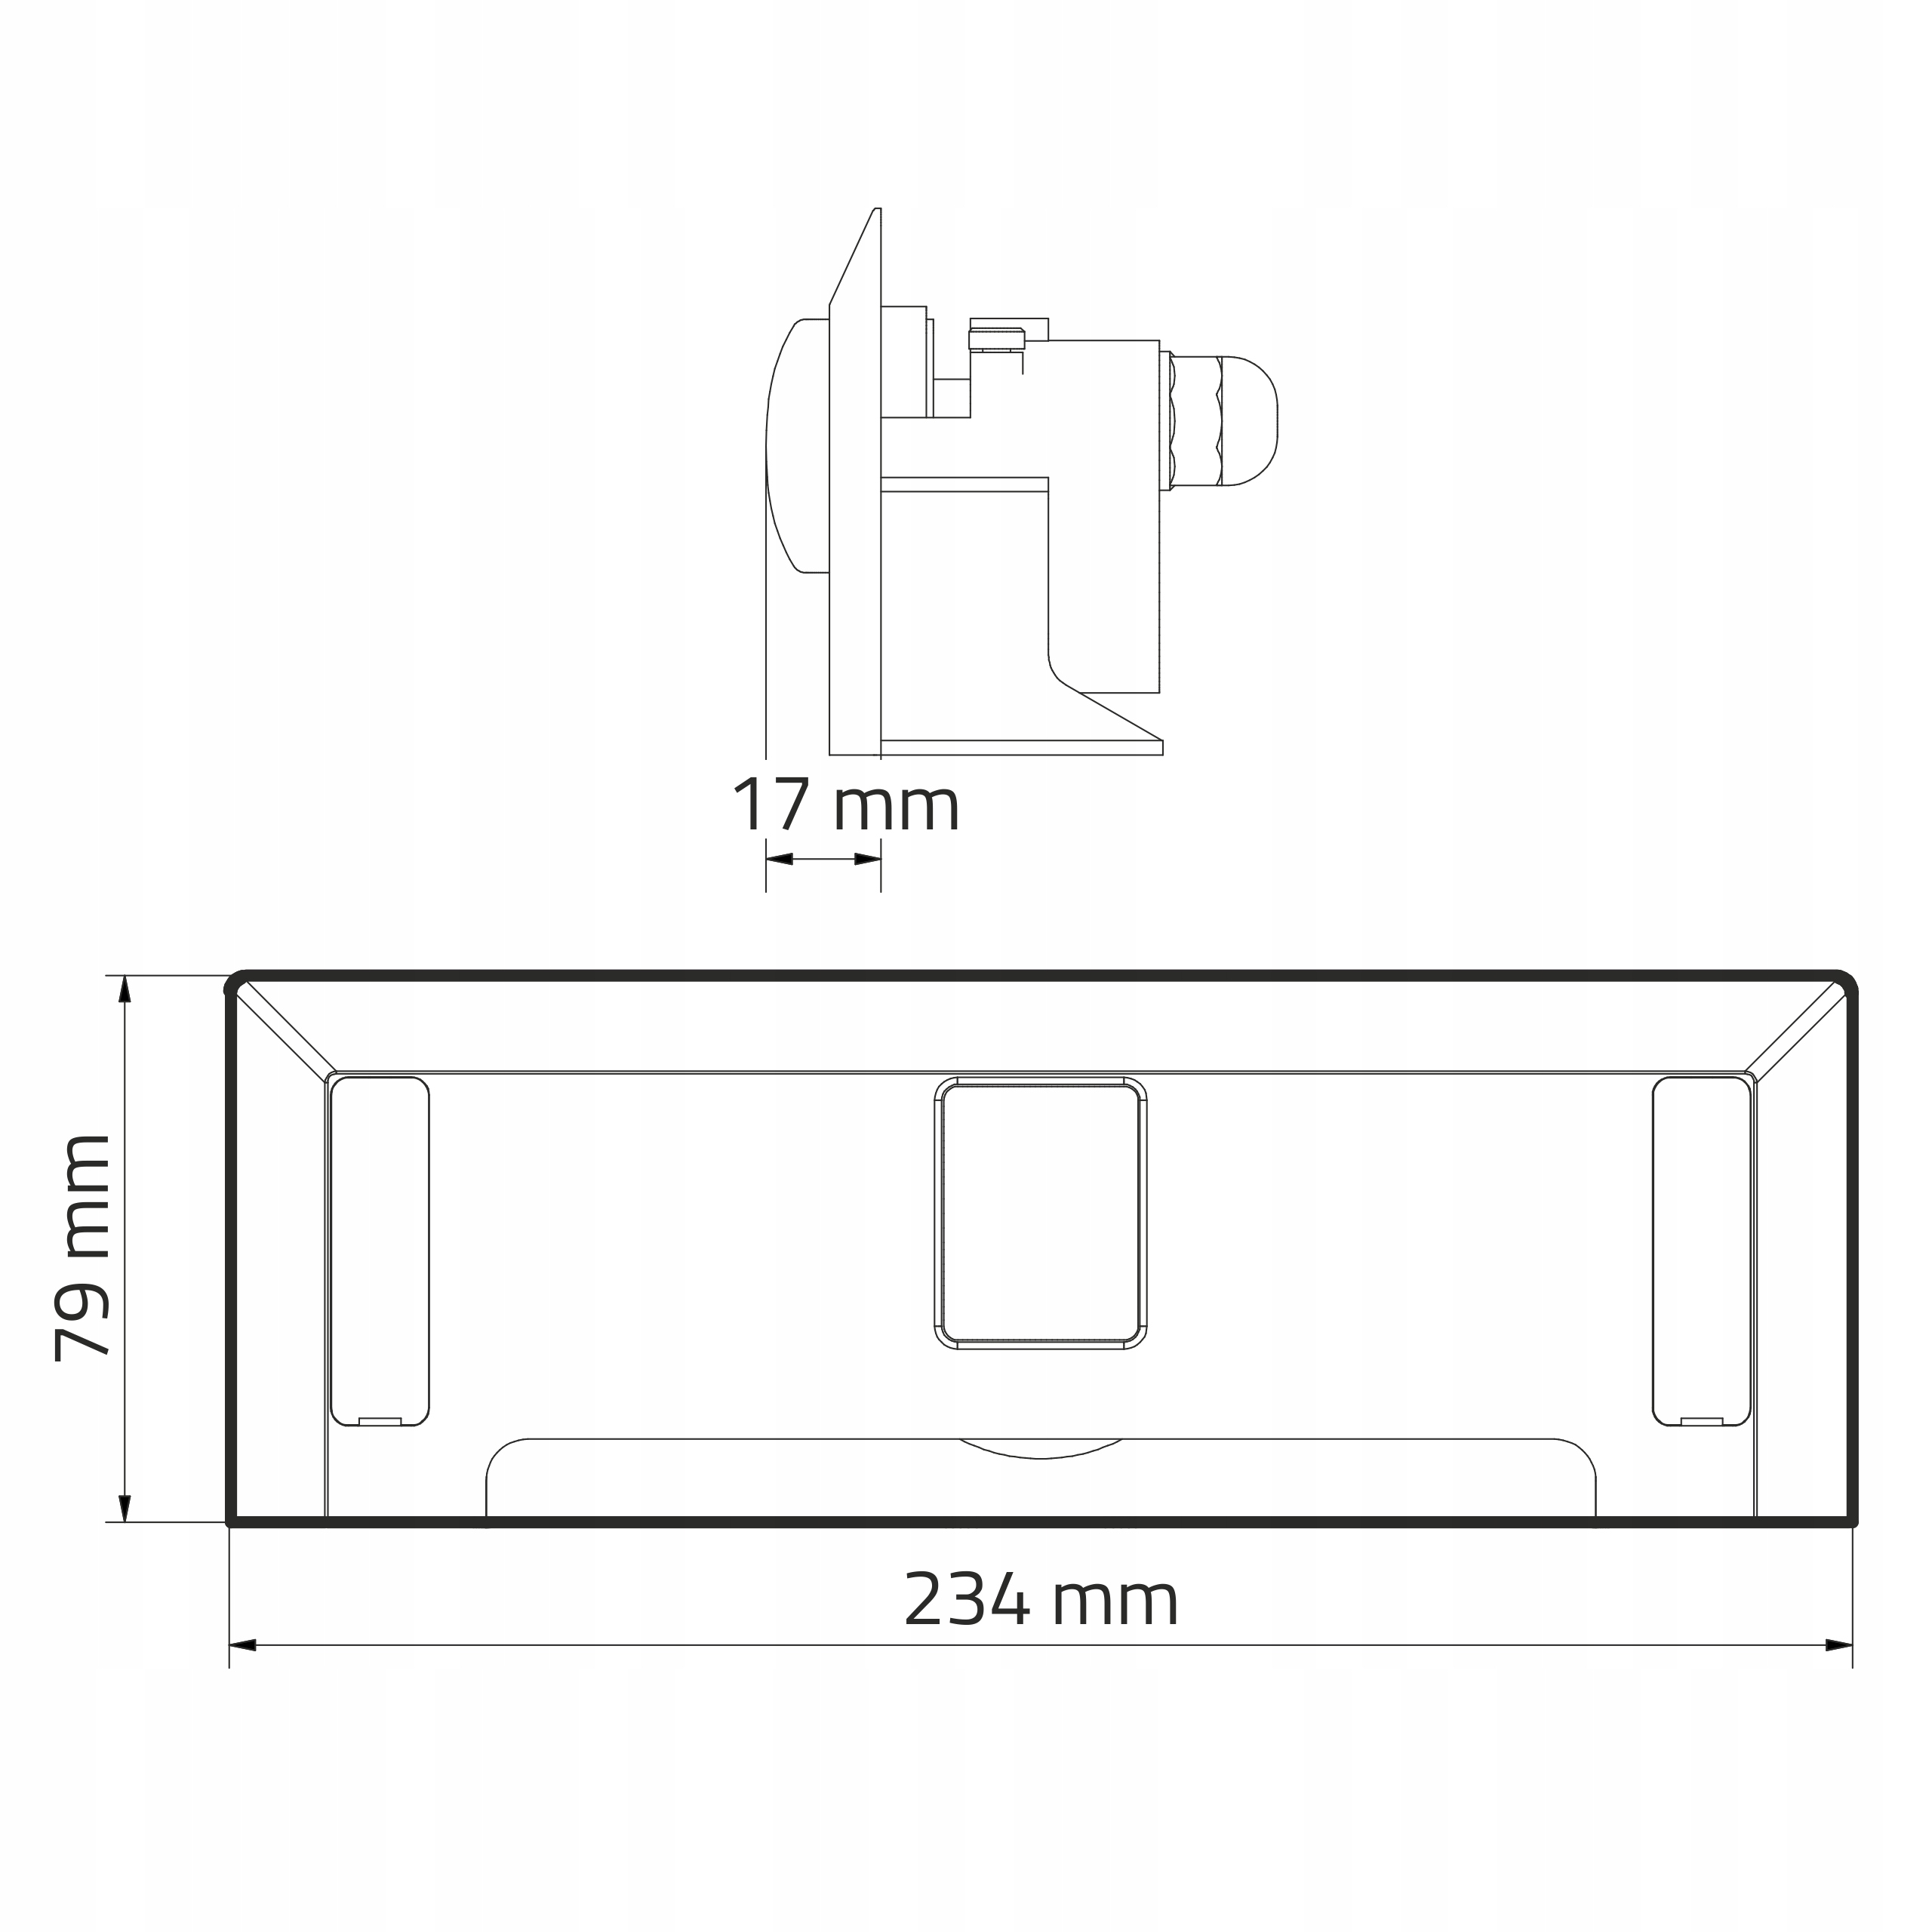 Автоматический совок LEOVAC DUE низкая ширина мебели 23.4 cm